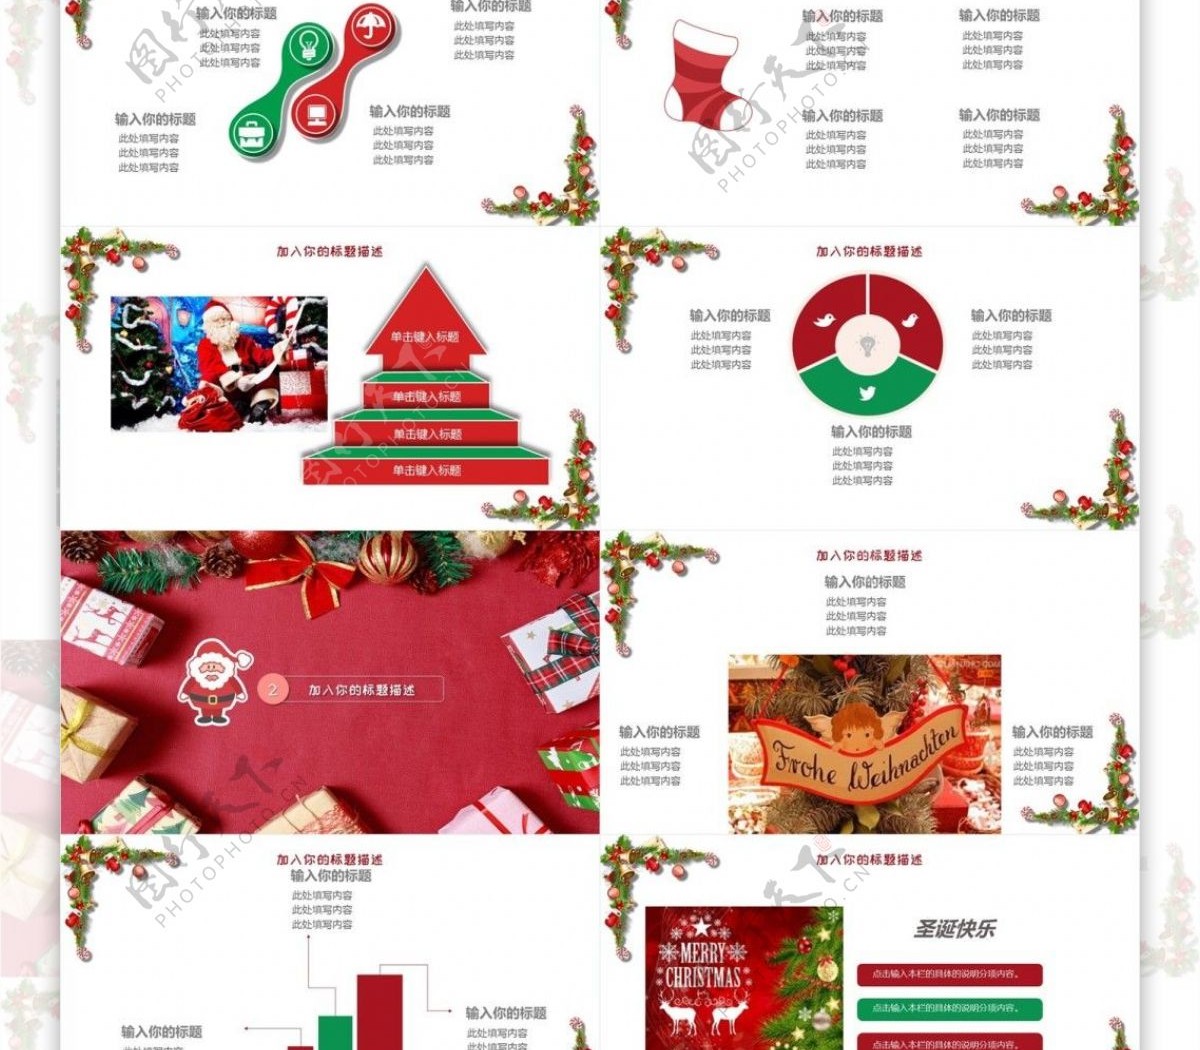 圣诞节节日盛典狂欢活动策划PPT模板